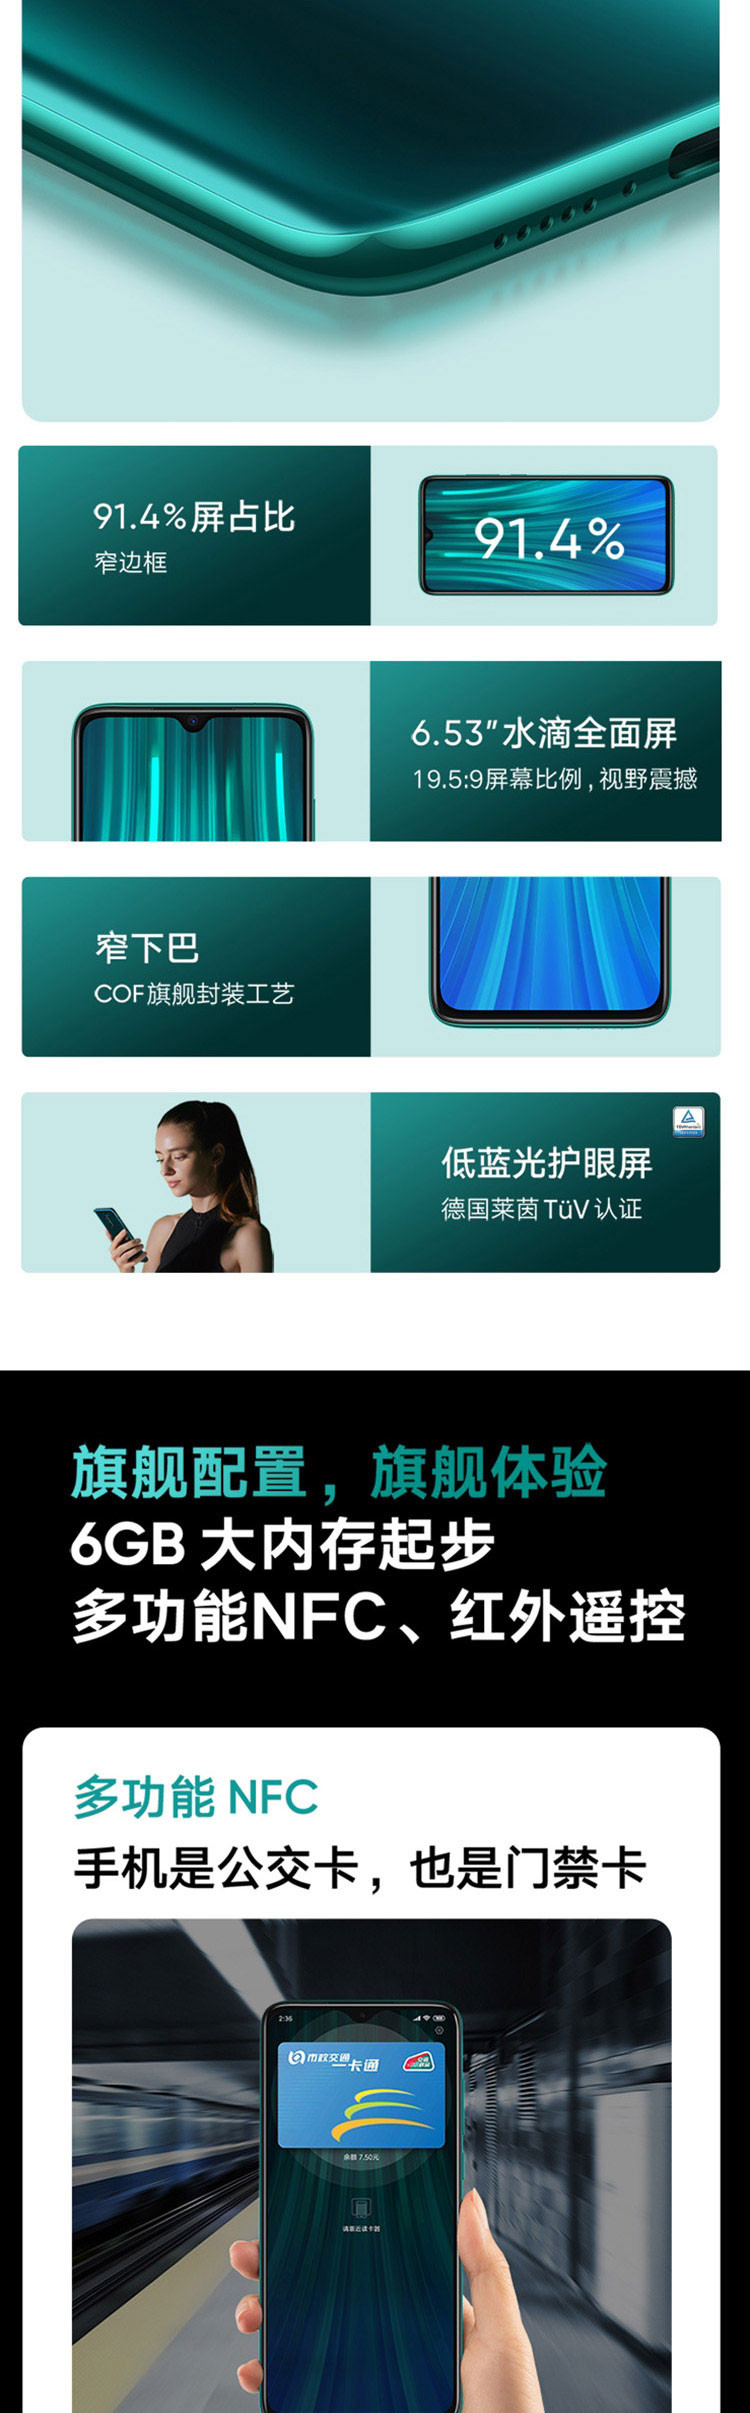 小米/MI Redmi Note8Pro 液冷游戏芯  8GB+128GB 游戏智能手机